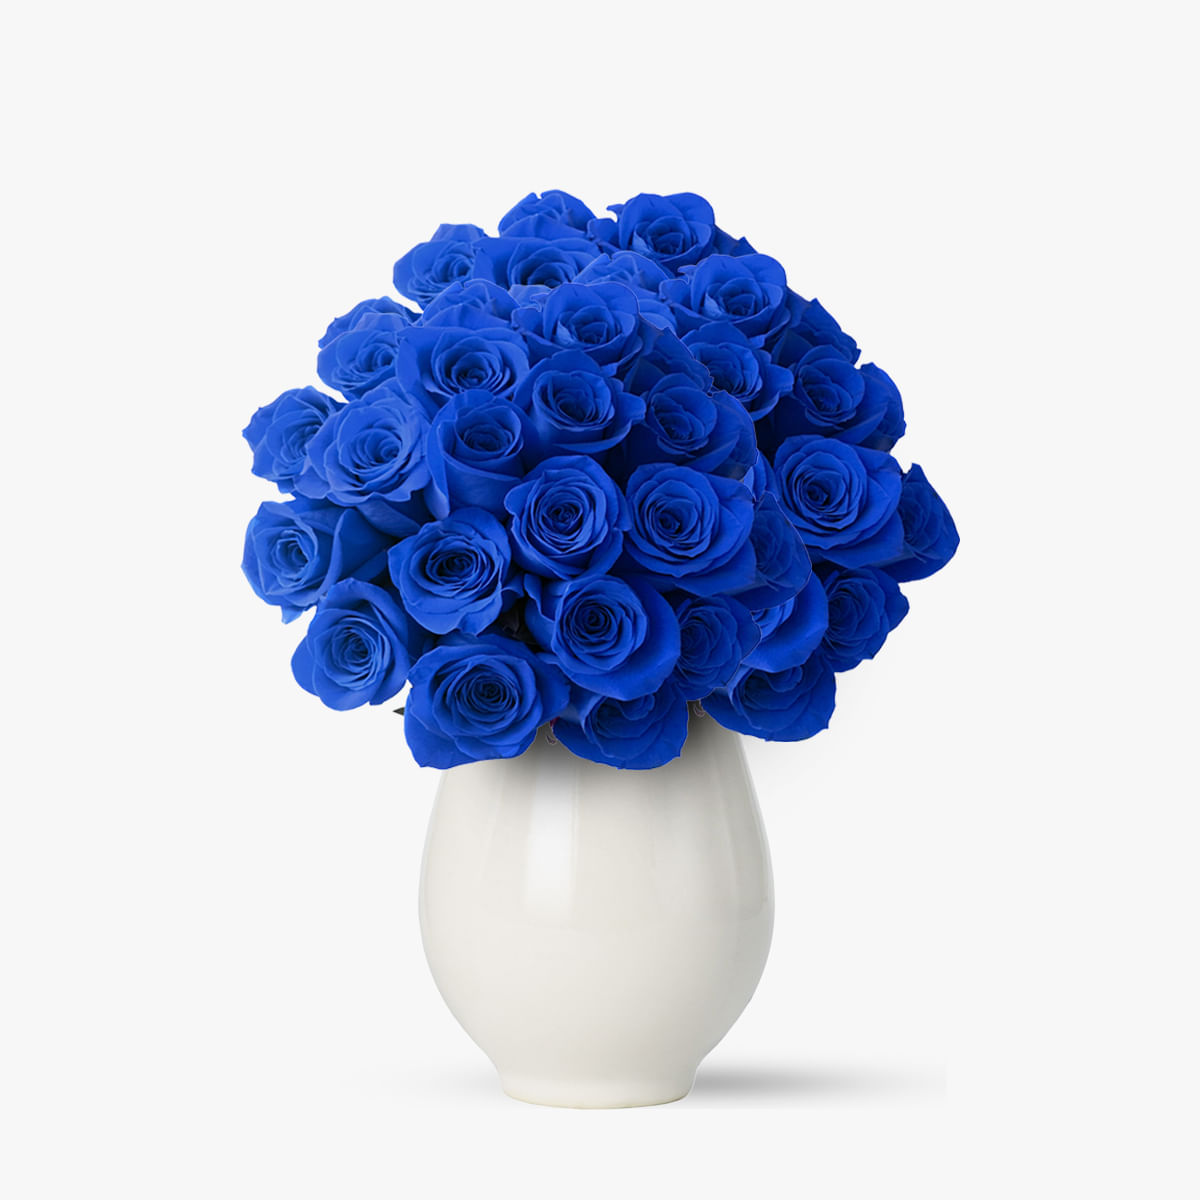 Buchet de 55 trandafiri albastri Floria imagine 2022